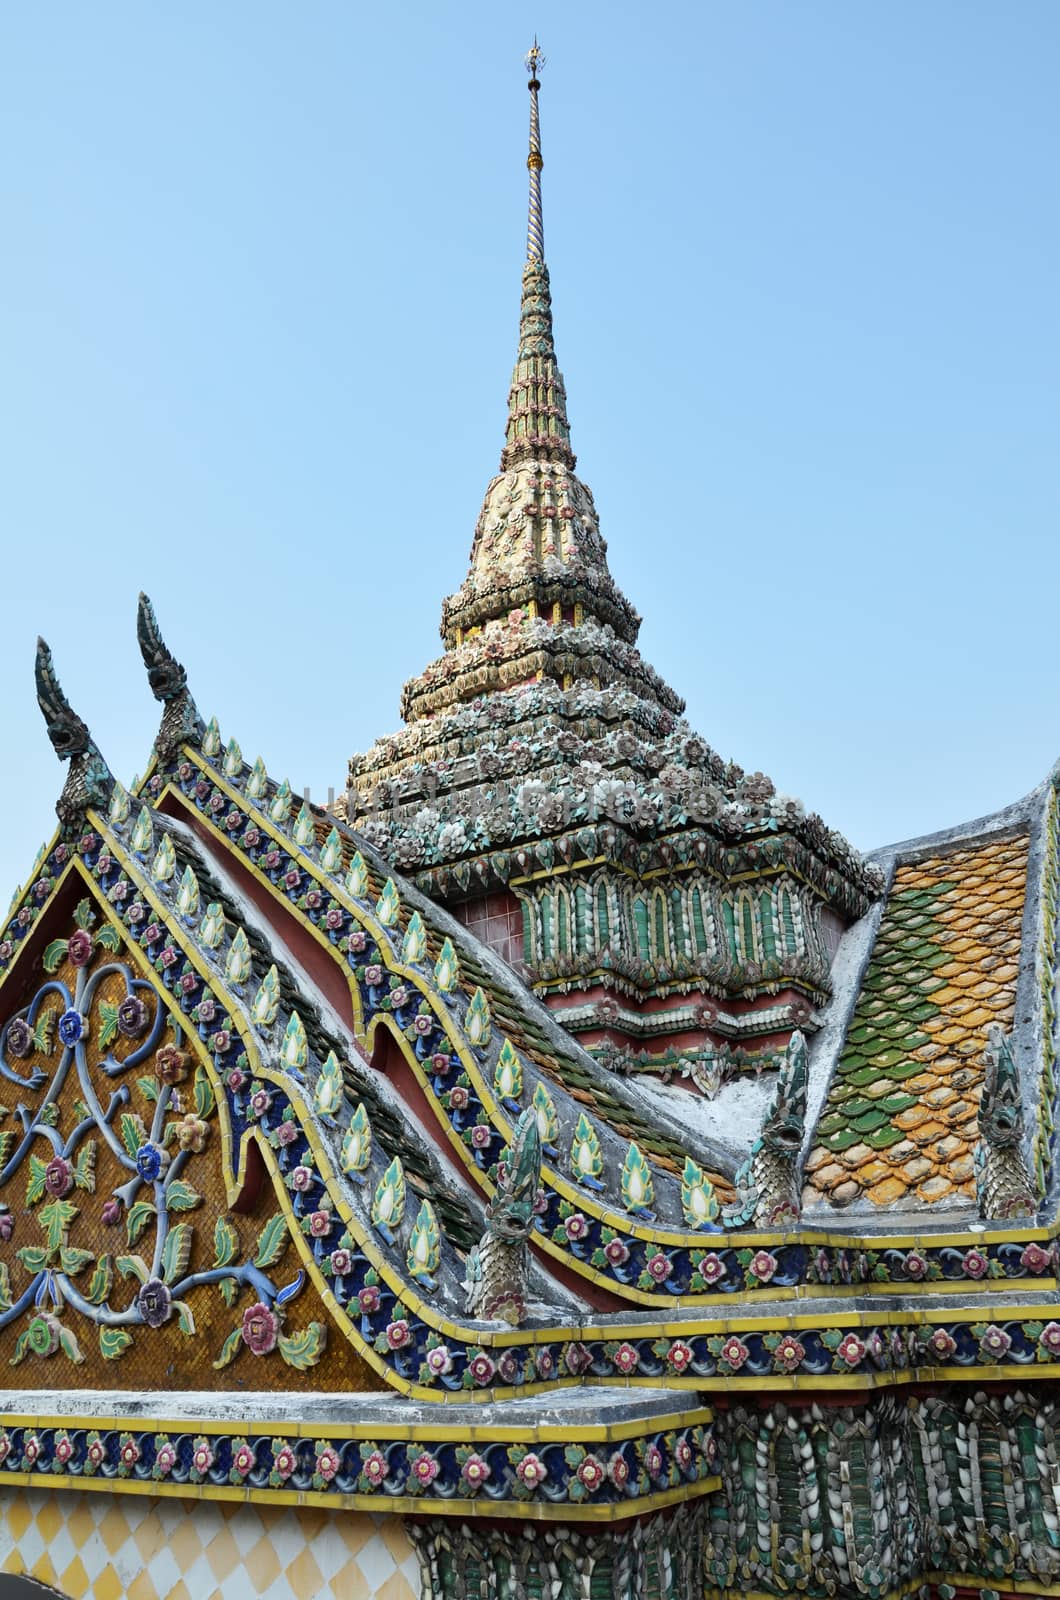 Grand Palace, Bangkok, Thailand by tang90246